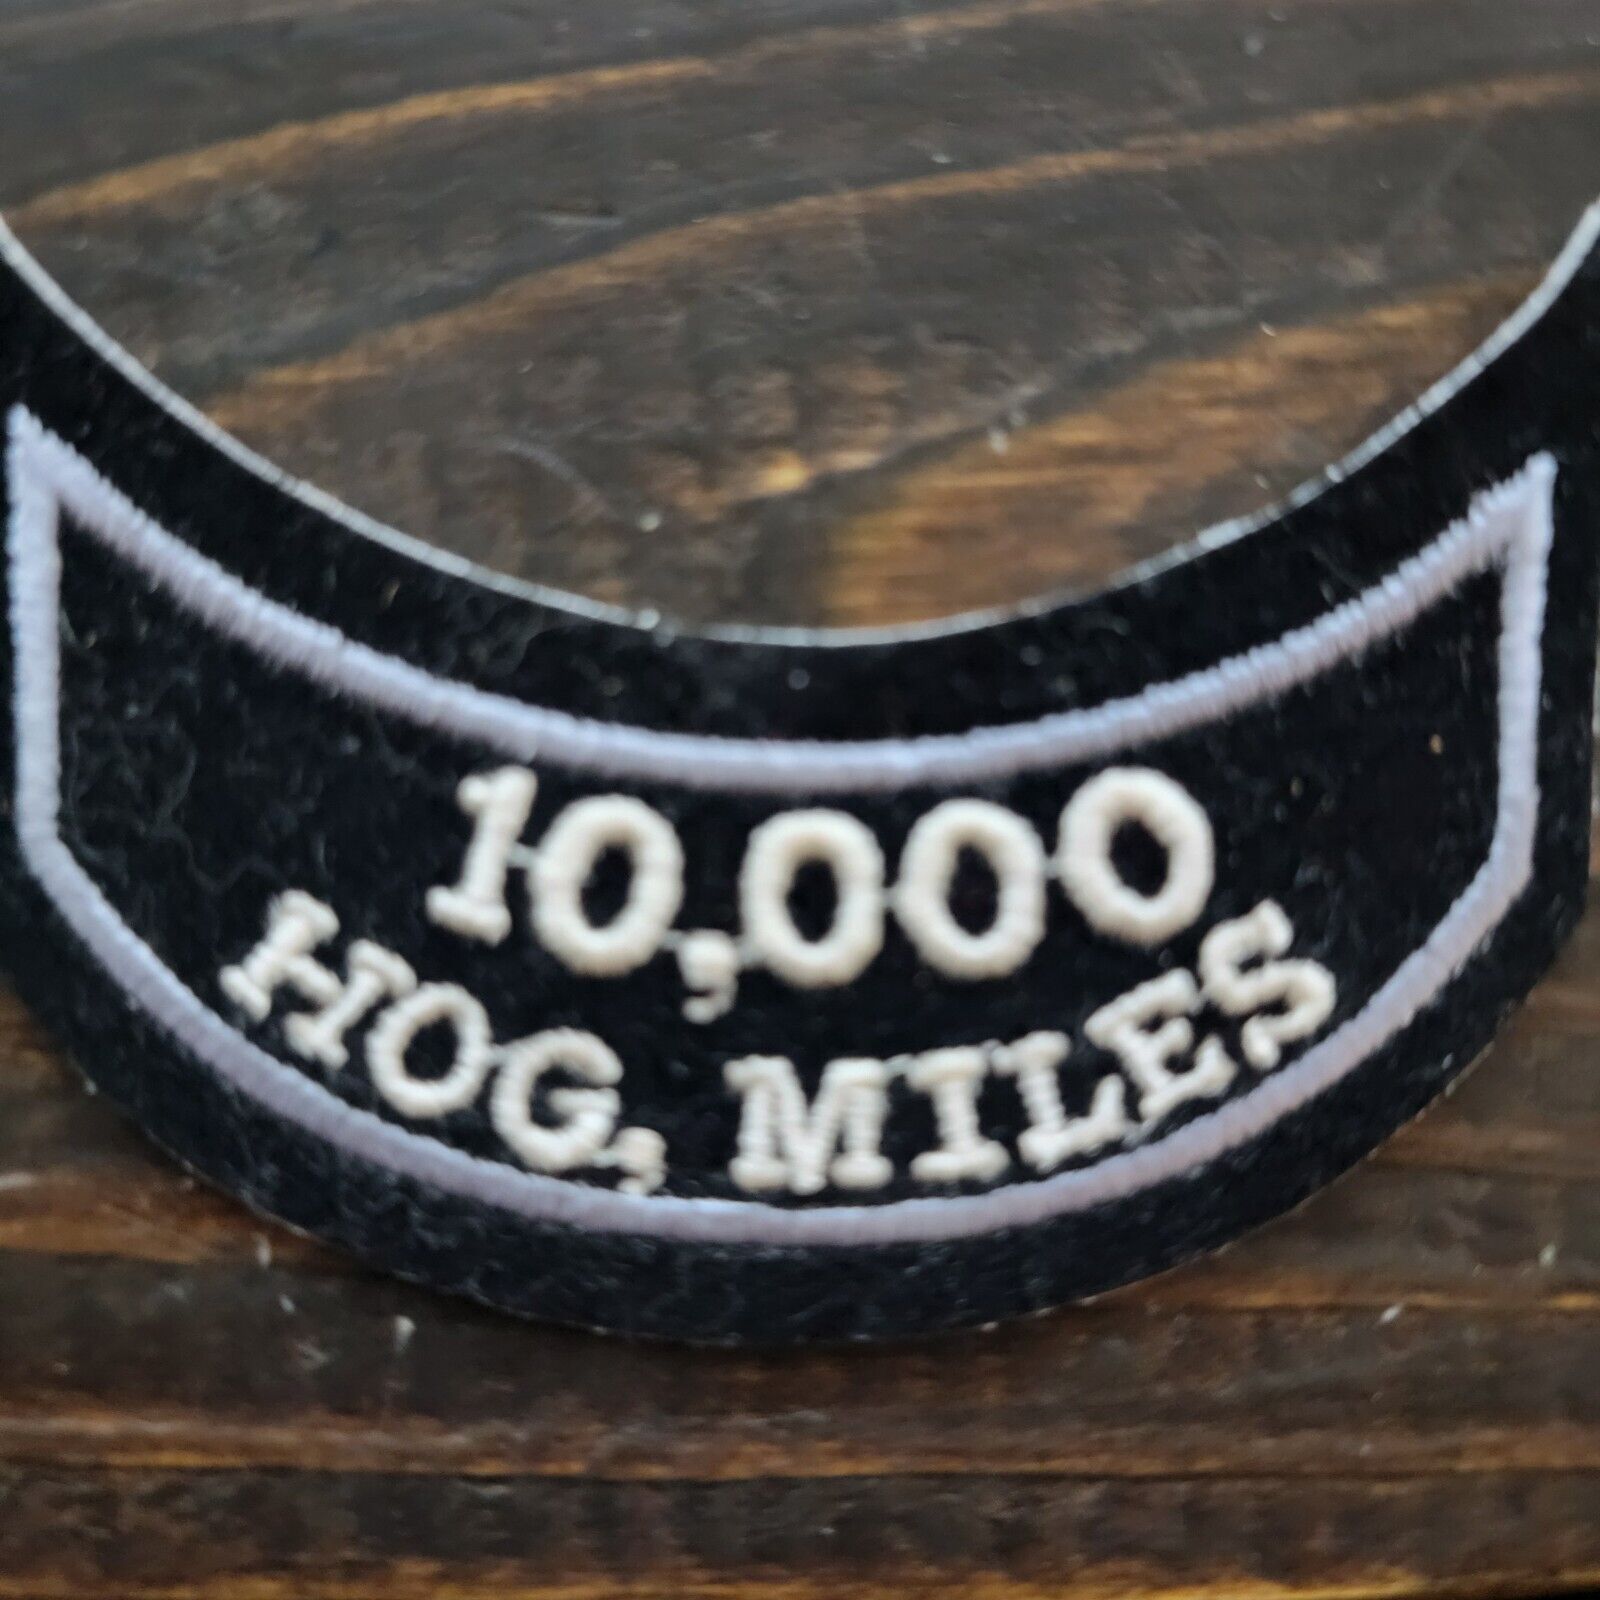 HARLEY-DAVIDSON OWNERS GROUP  HOG Mileage 10,000 MILES VEST JACKET PATCH Rocker